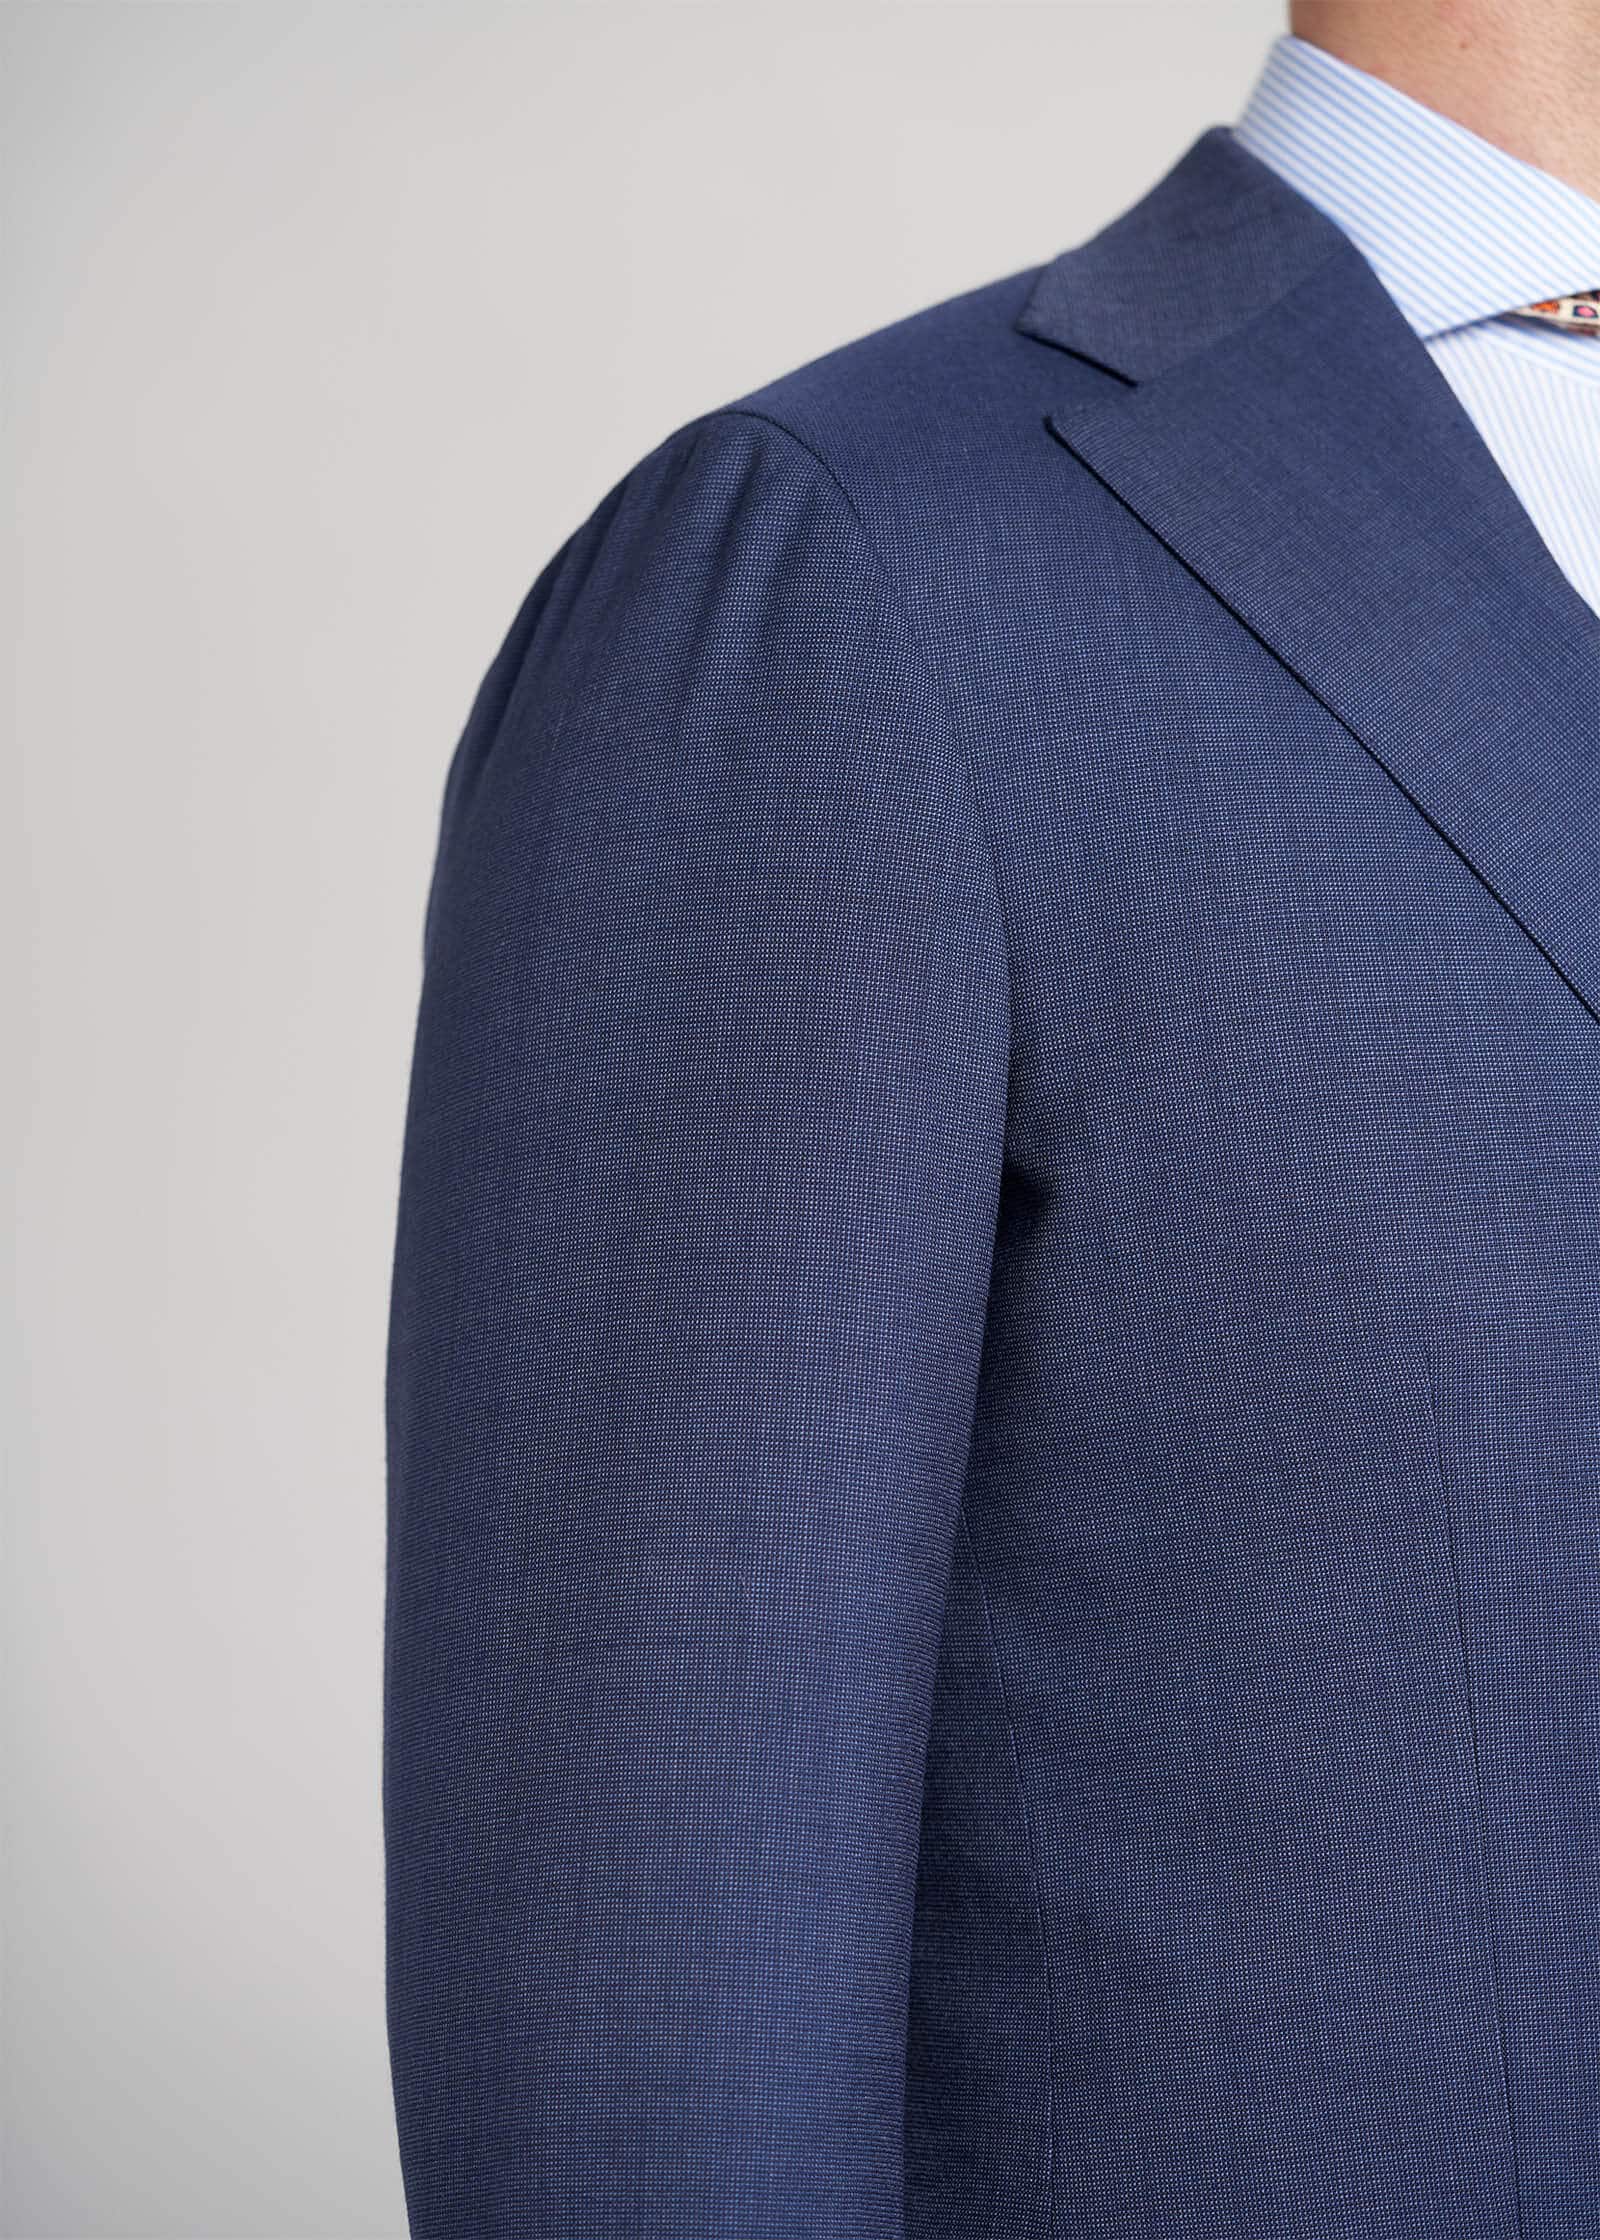 Clear-Blue-Nailhead-Tropical-Mond-Custom-Suit-Details-Shoulder